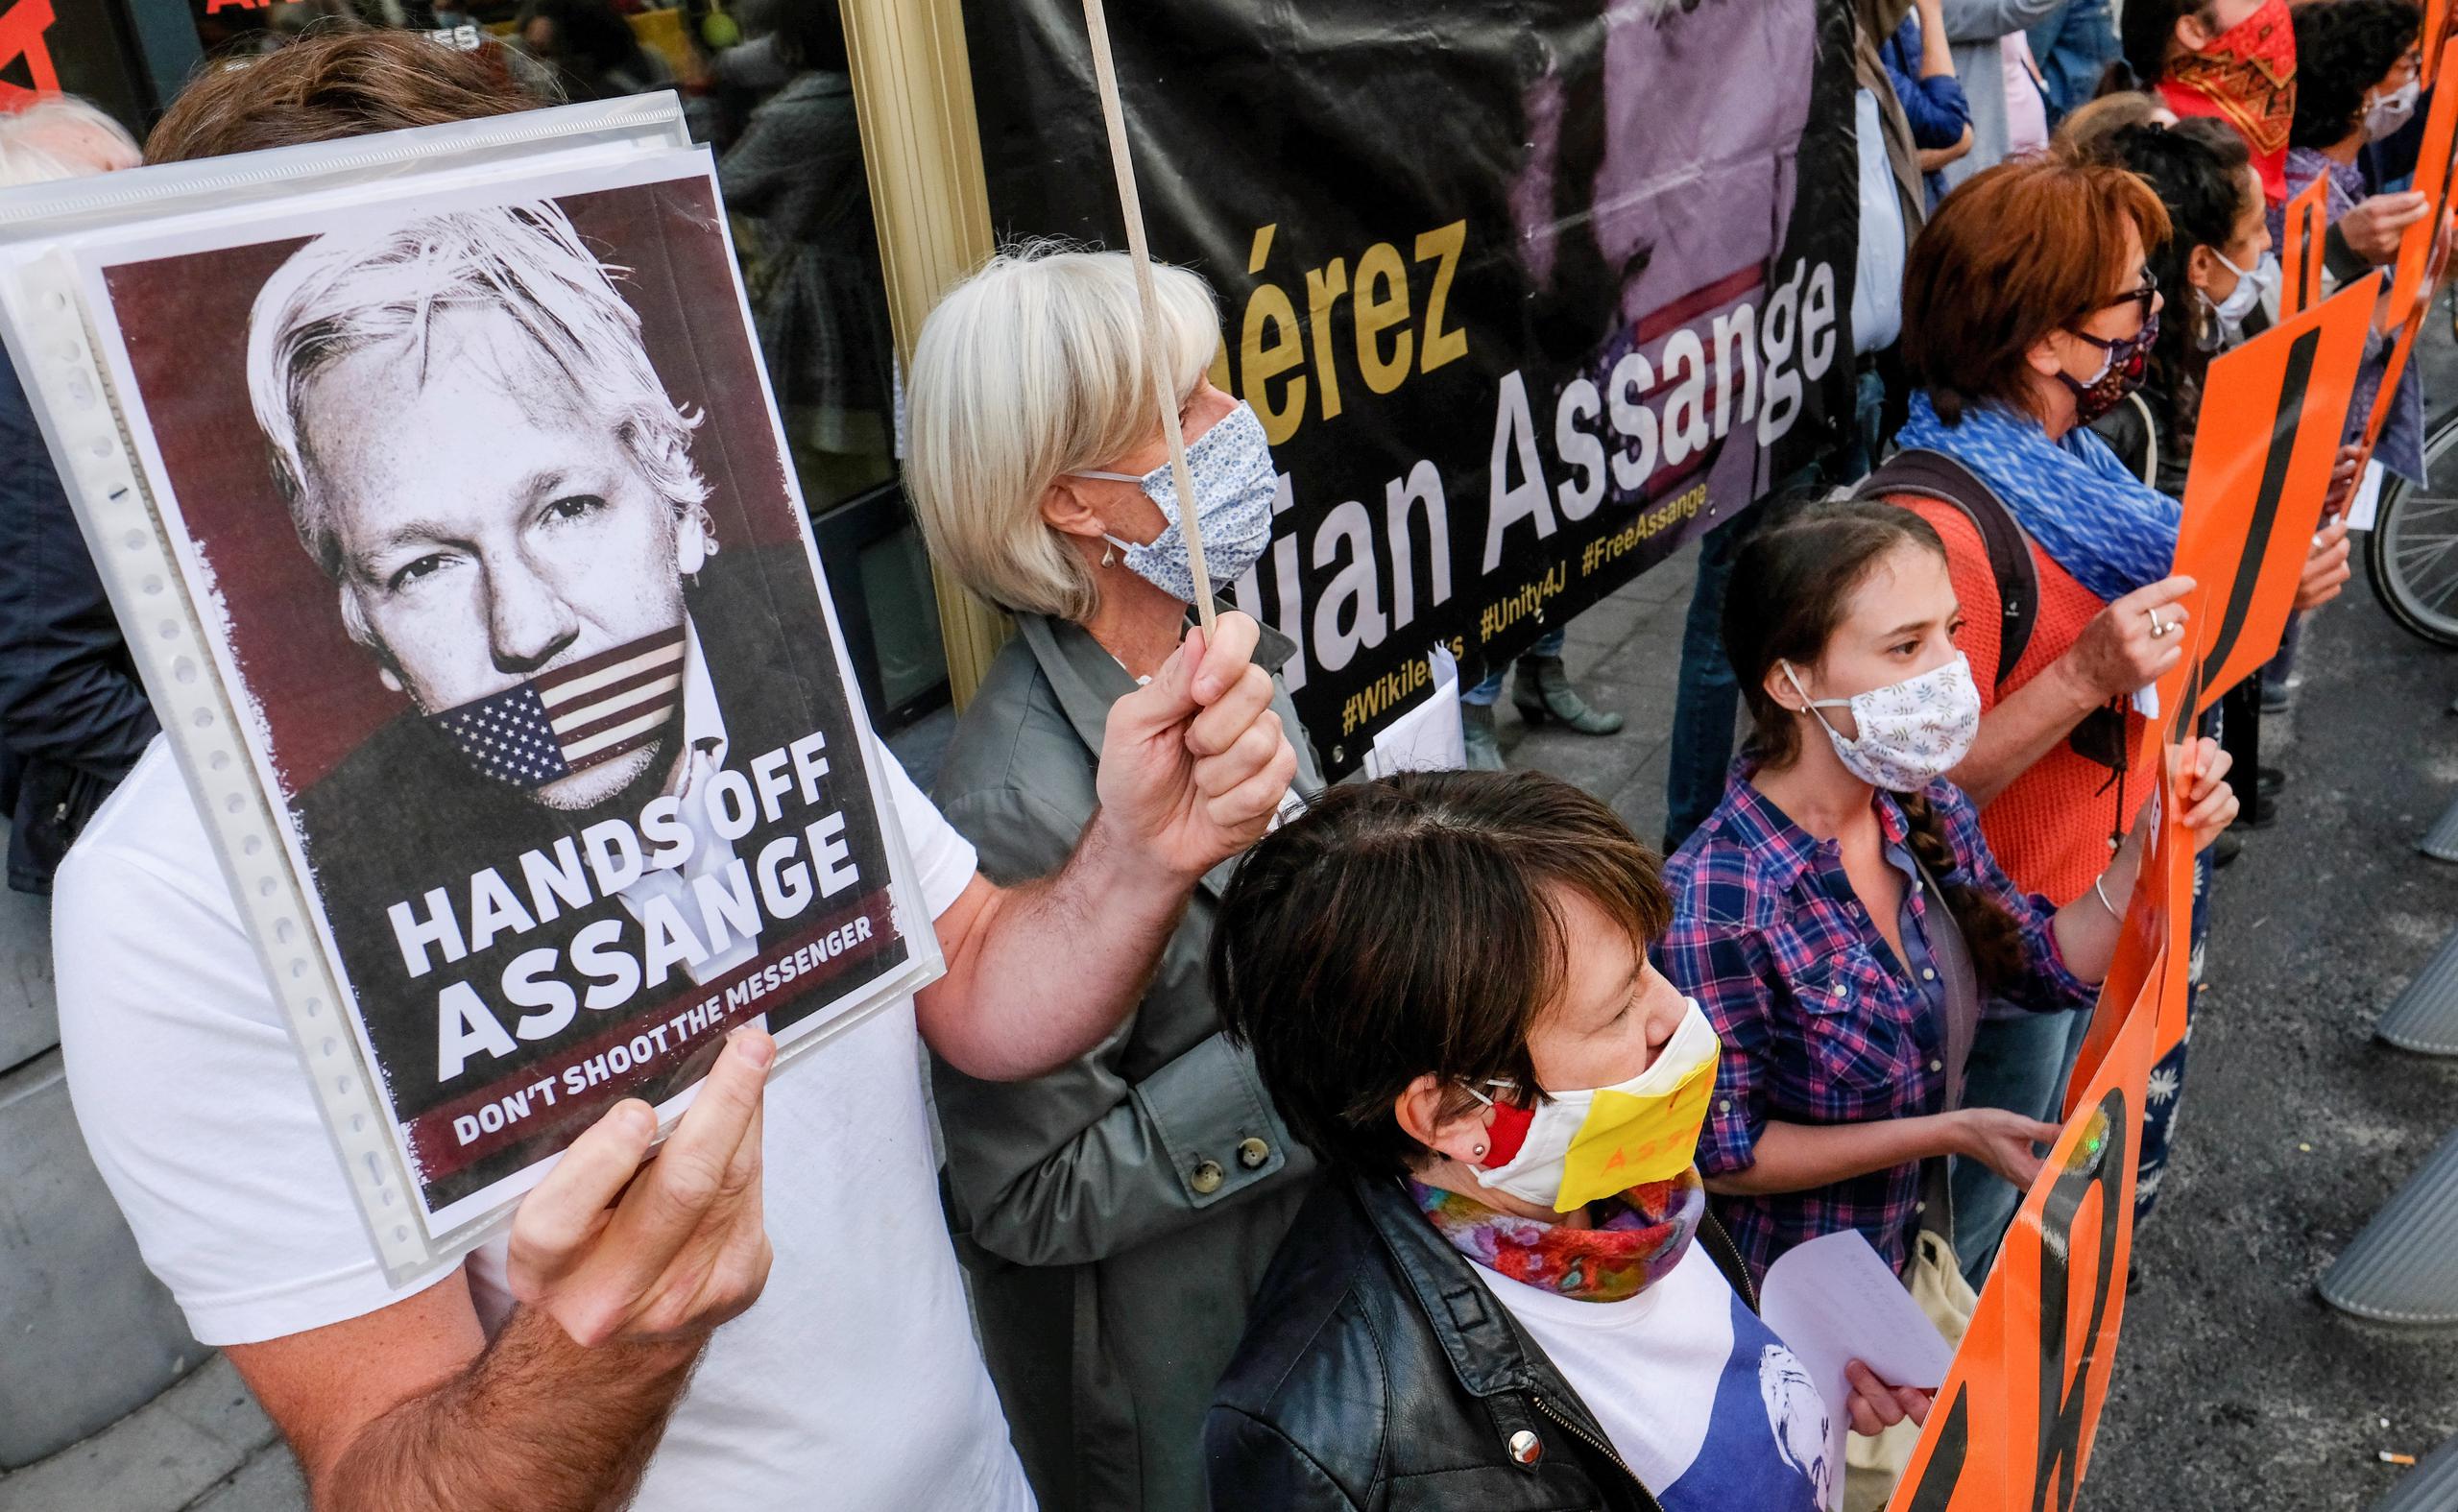 Si es condenado en Estados Unidos, podría recibir una pena de hasta 175 años de cárcel, según los abogados de Assange, aunque las autoridades estadounidenses han dicho que la condena probablemente sería mucho menor.